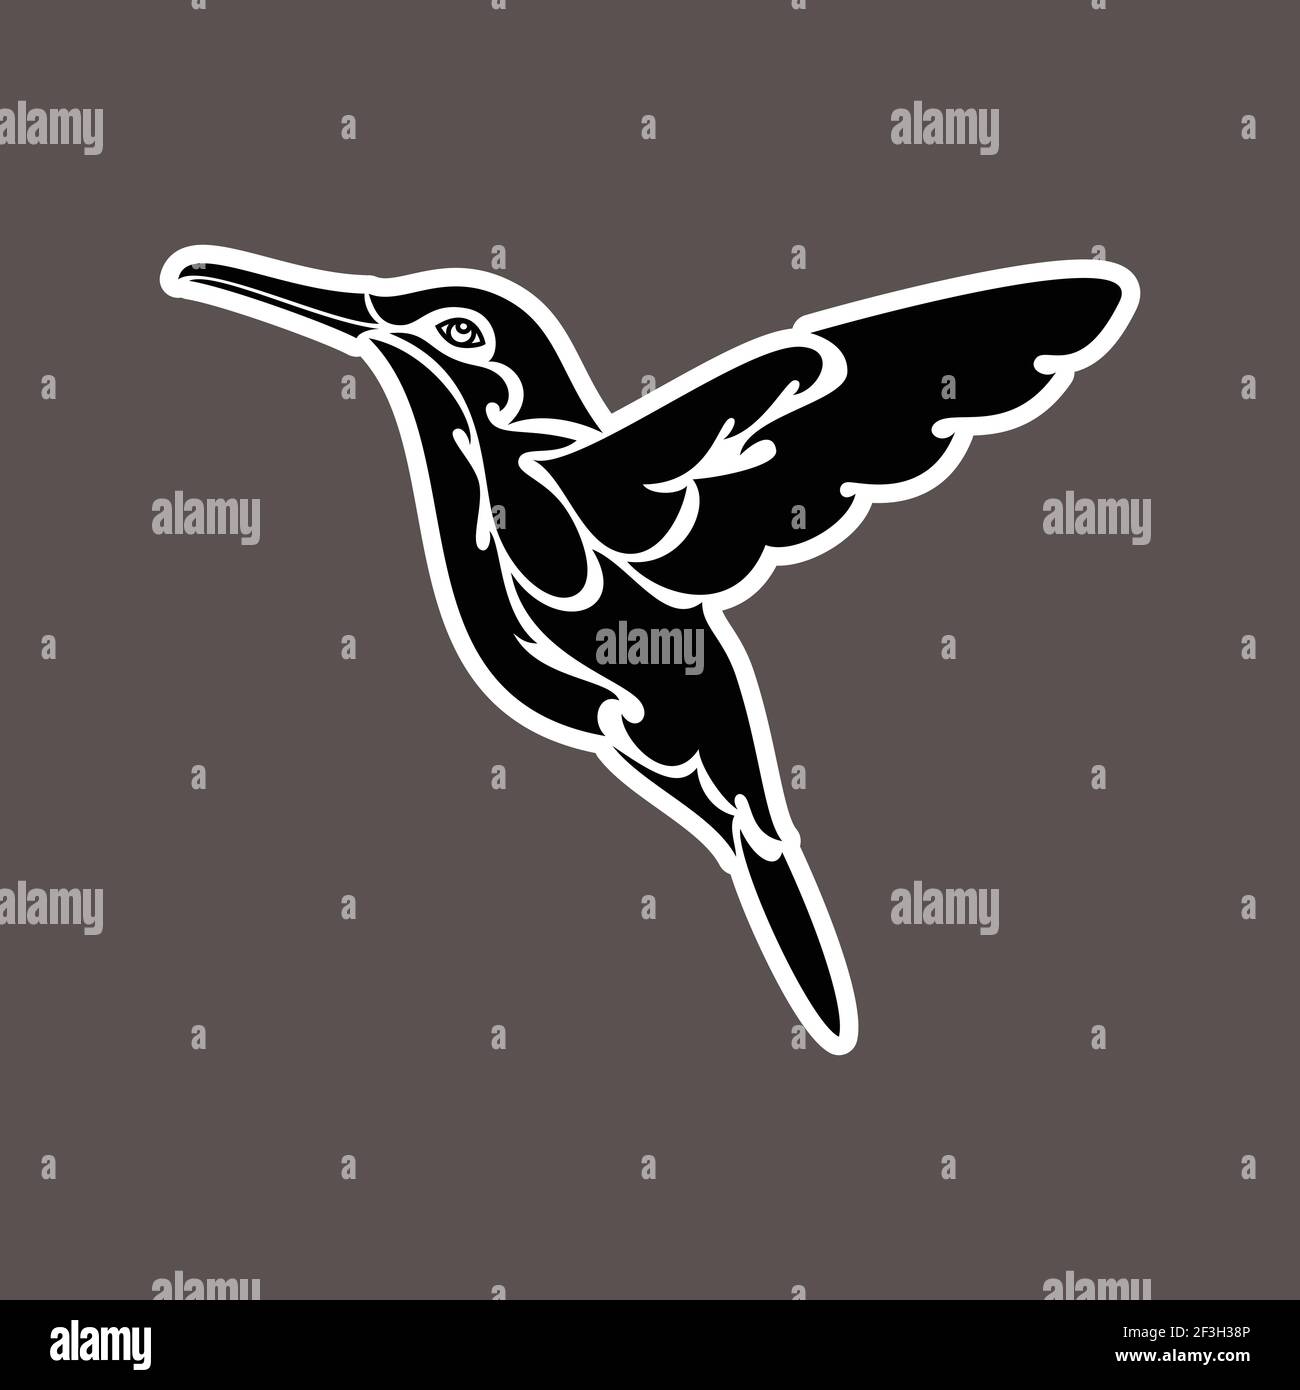 Ritratto astratto disegnato a mano di un colibrì. Adesivo. Illustrazione stilizzata vettoriale isolata su sfondo scuro. Illustrazione Vettoriale